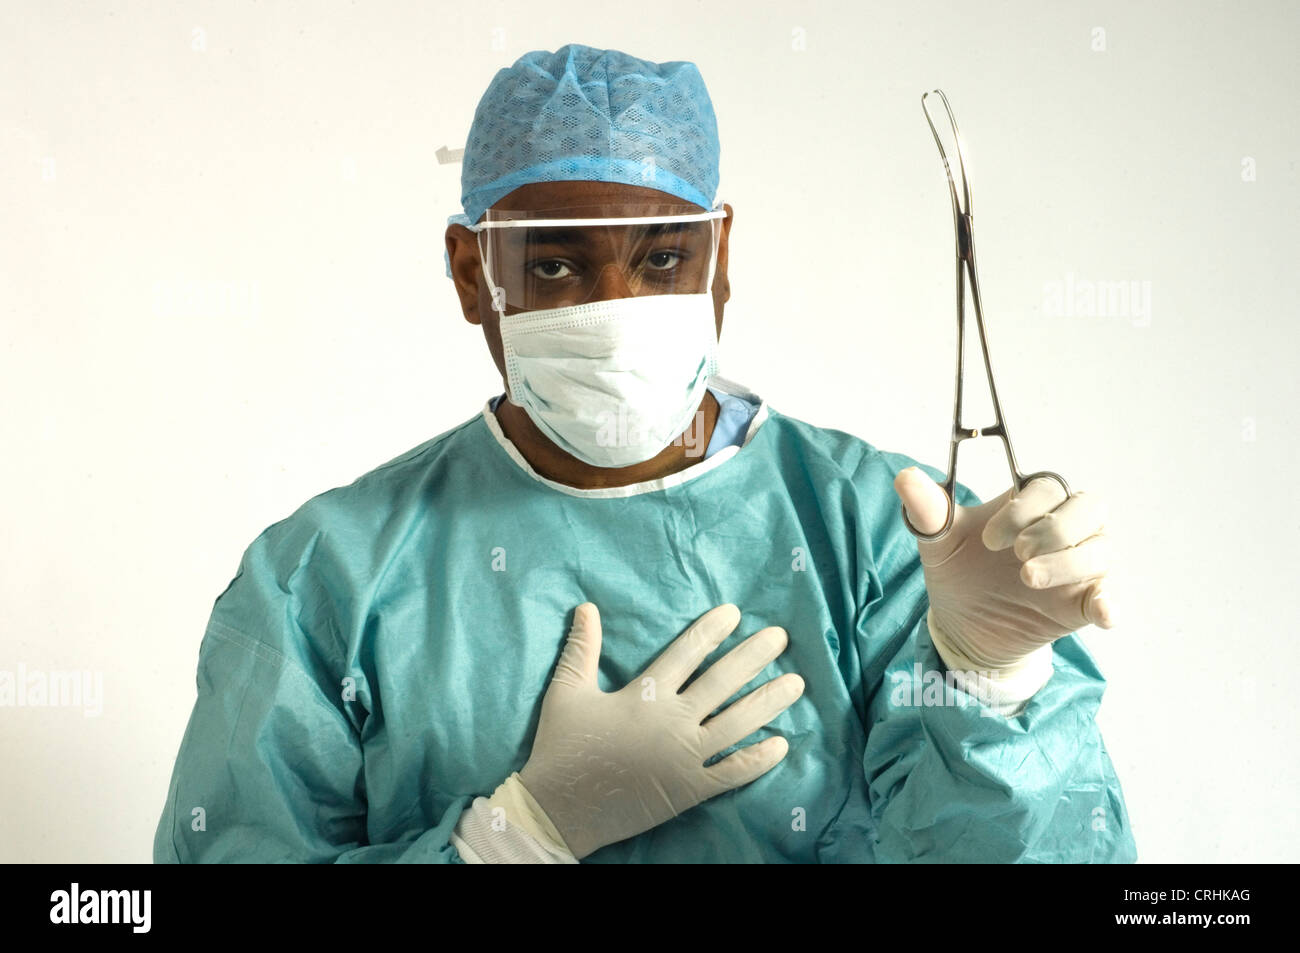 Ein Chirurg, gekleidet in Schutzkleidung mit ein paar Zangen Stockfoto